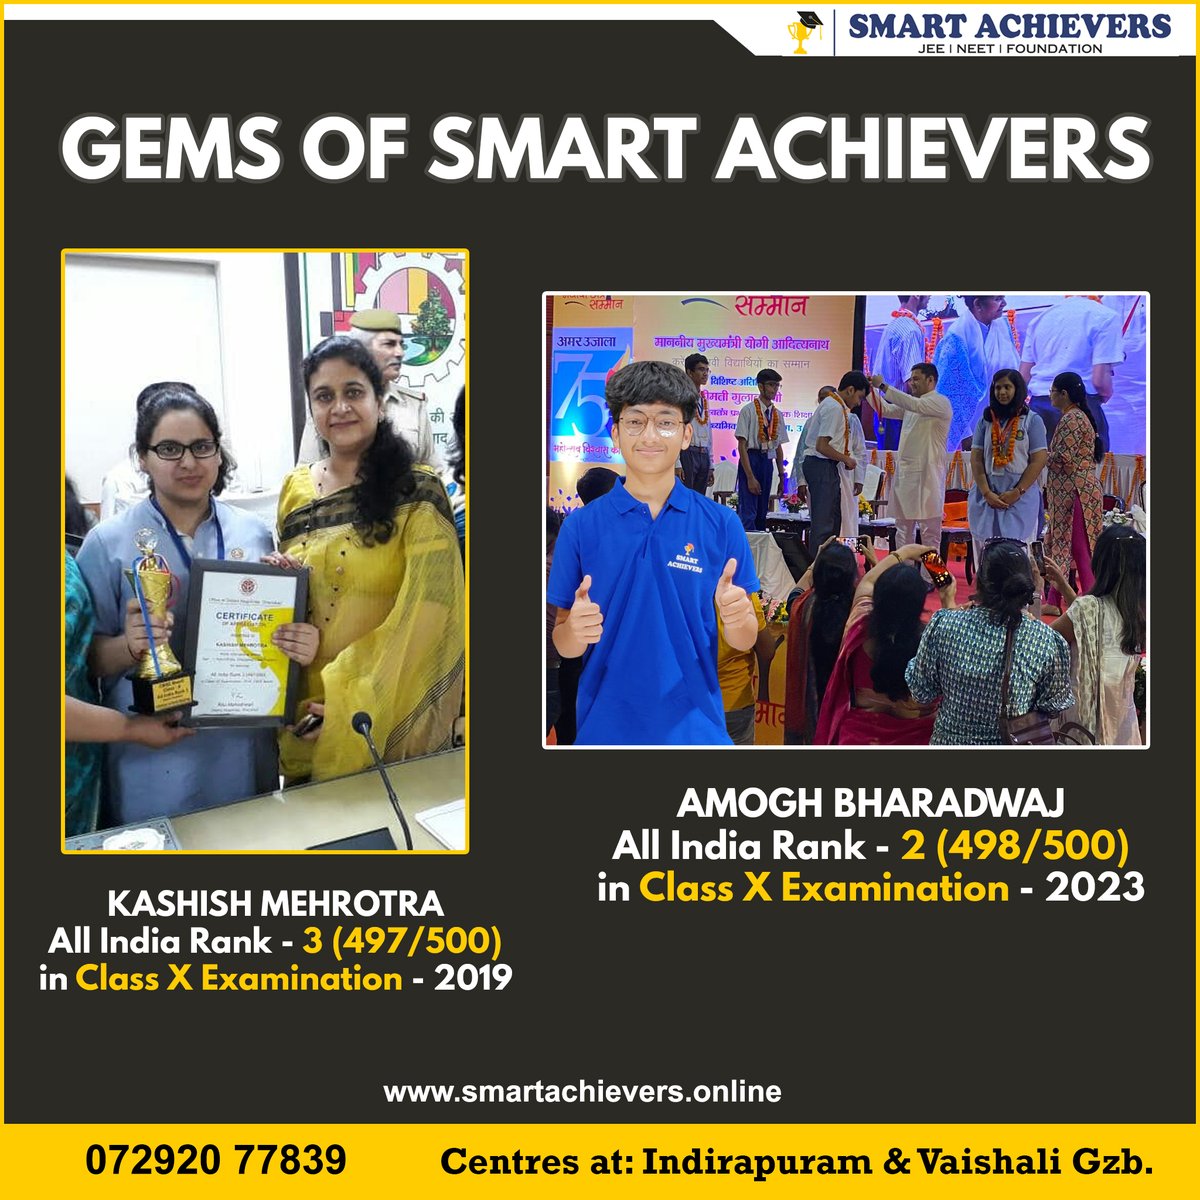 GEMS OF SMART ACHIEVERS
#smartachievers #jee #neet #Ghaziabad #indirapuram #vaishali